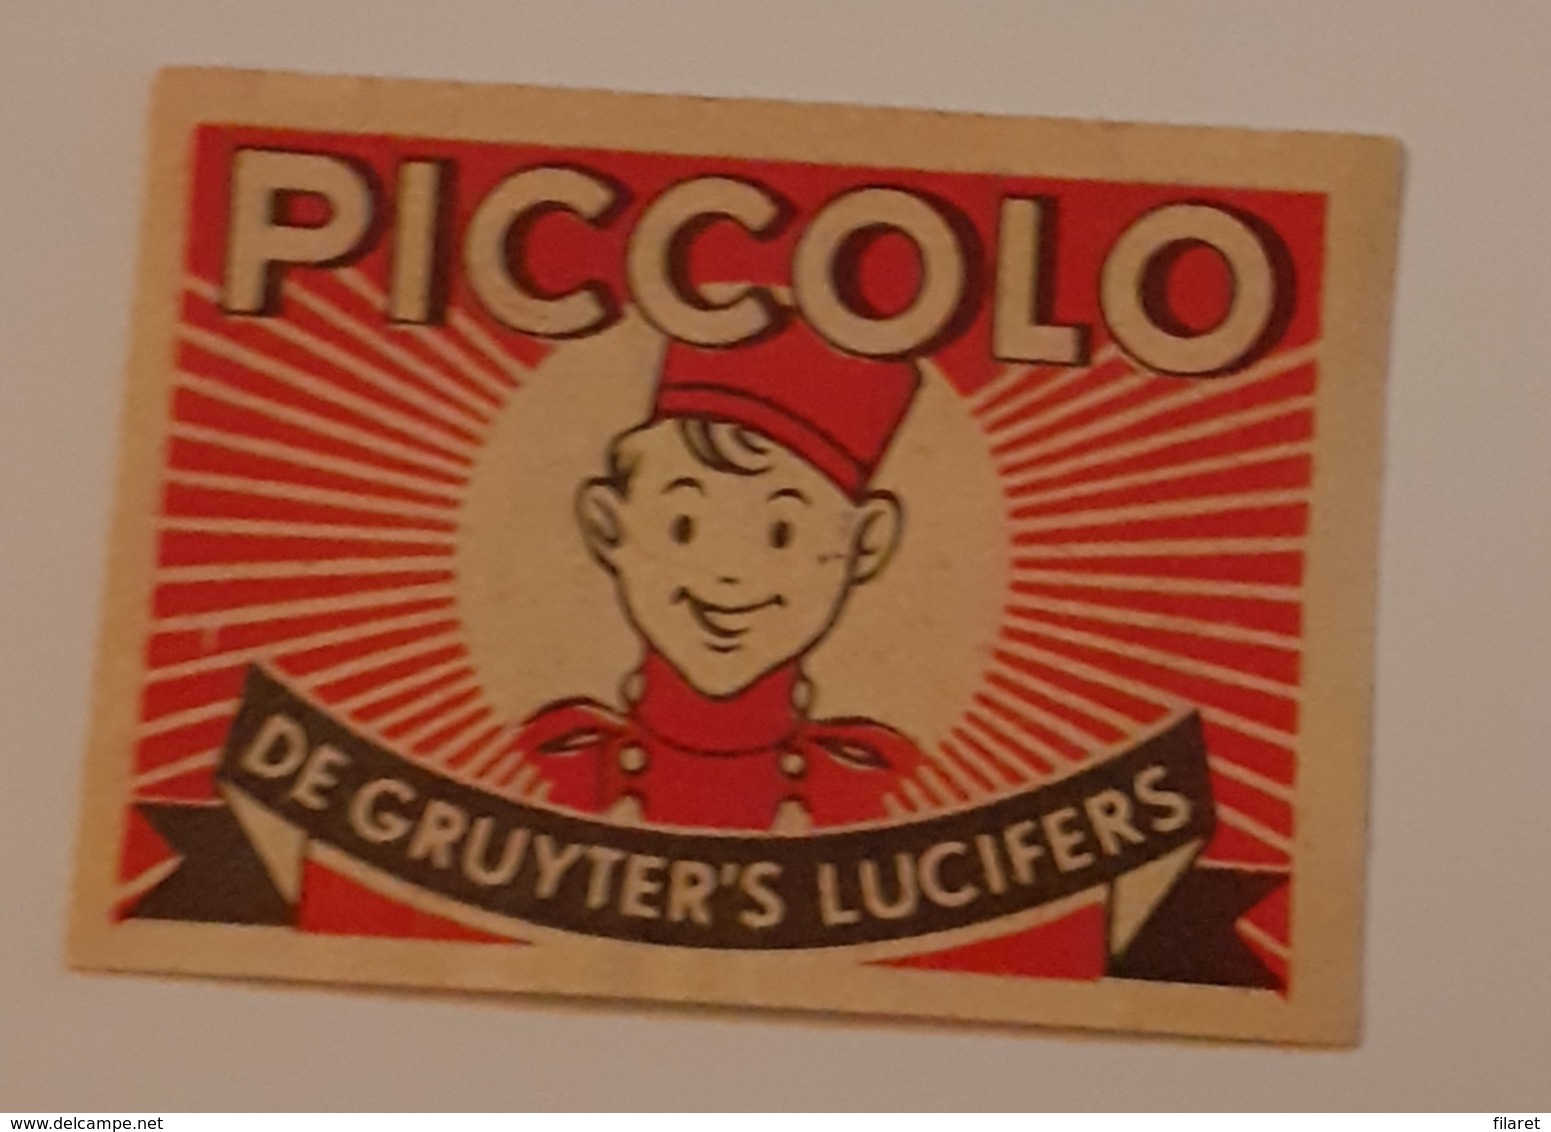 PICCOLO - Cajas De Cerillas - Etiquetas